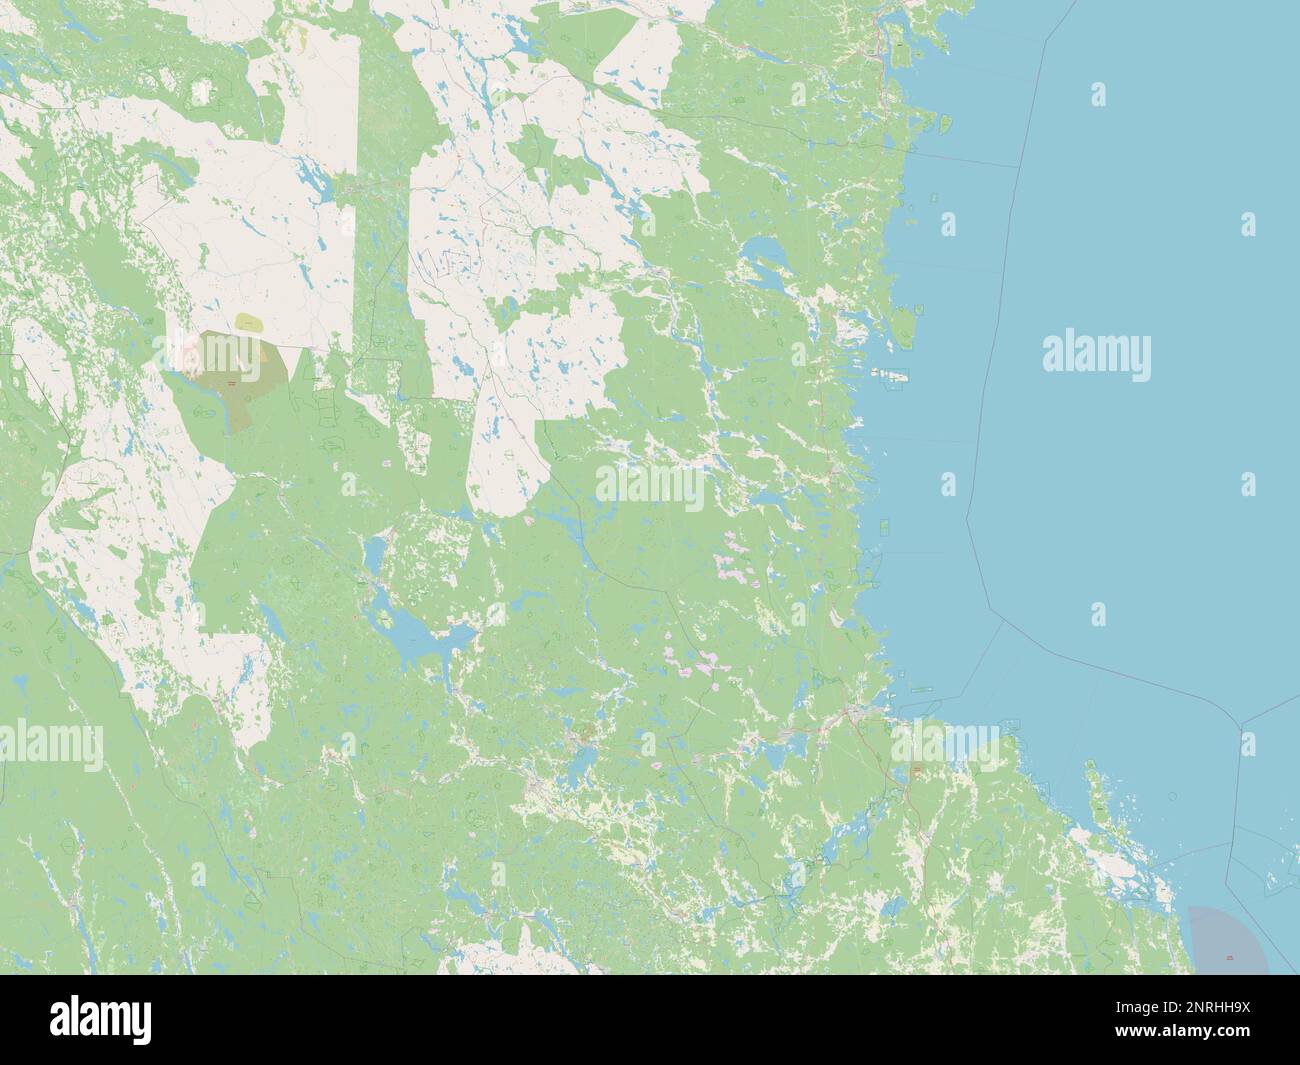 Gavleborg, county of Sweden. Open Street Map Stock Photo